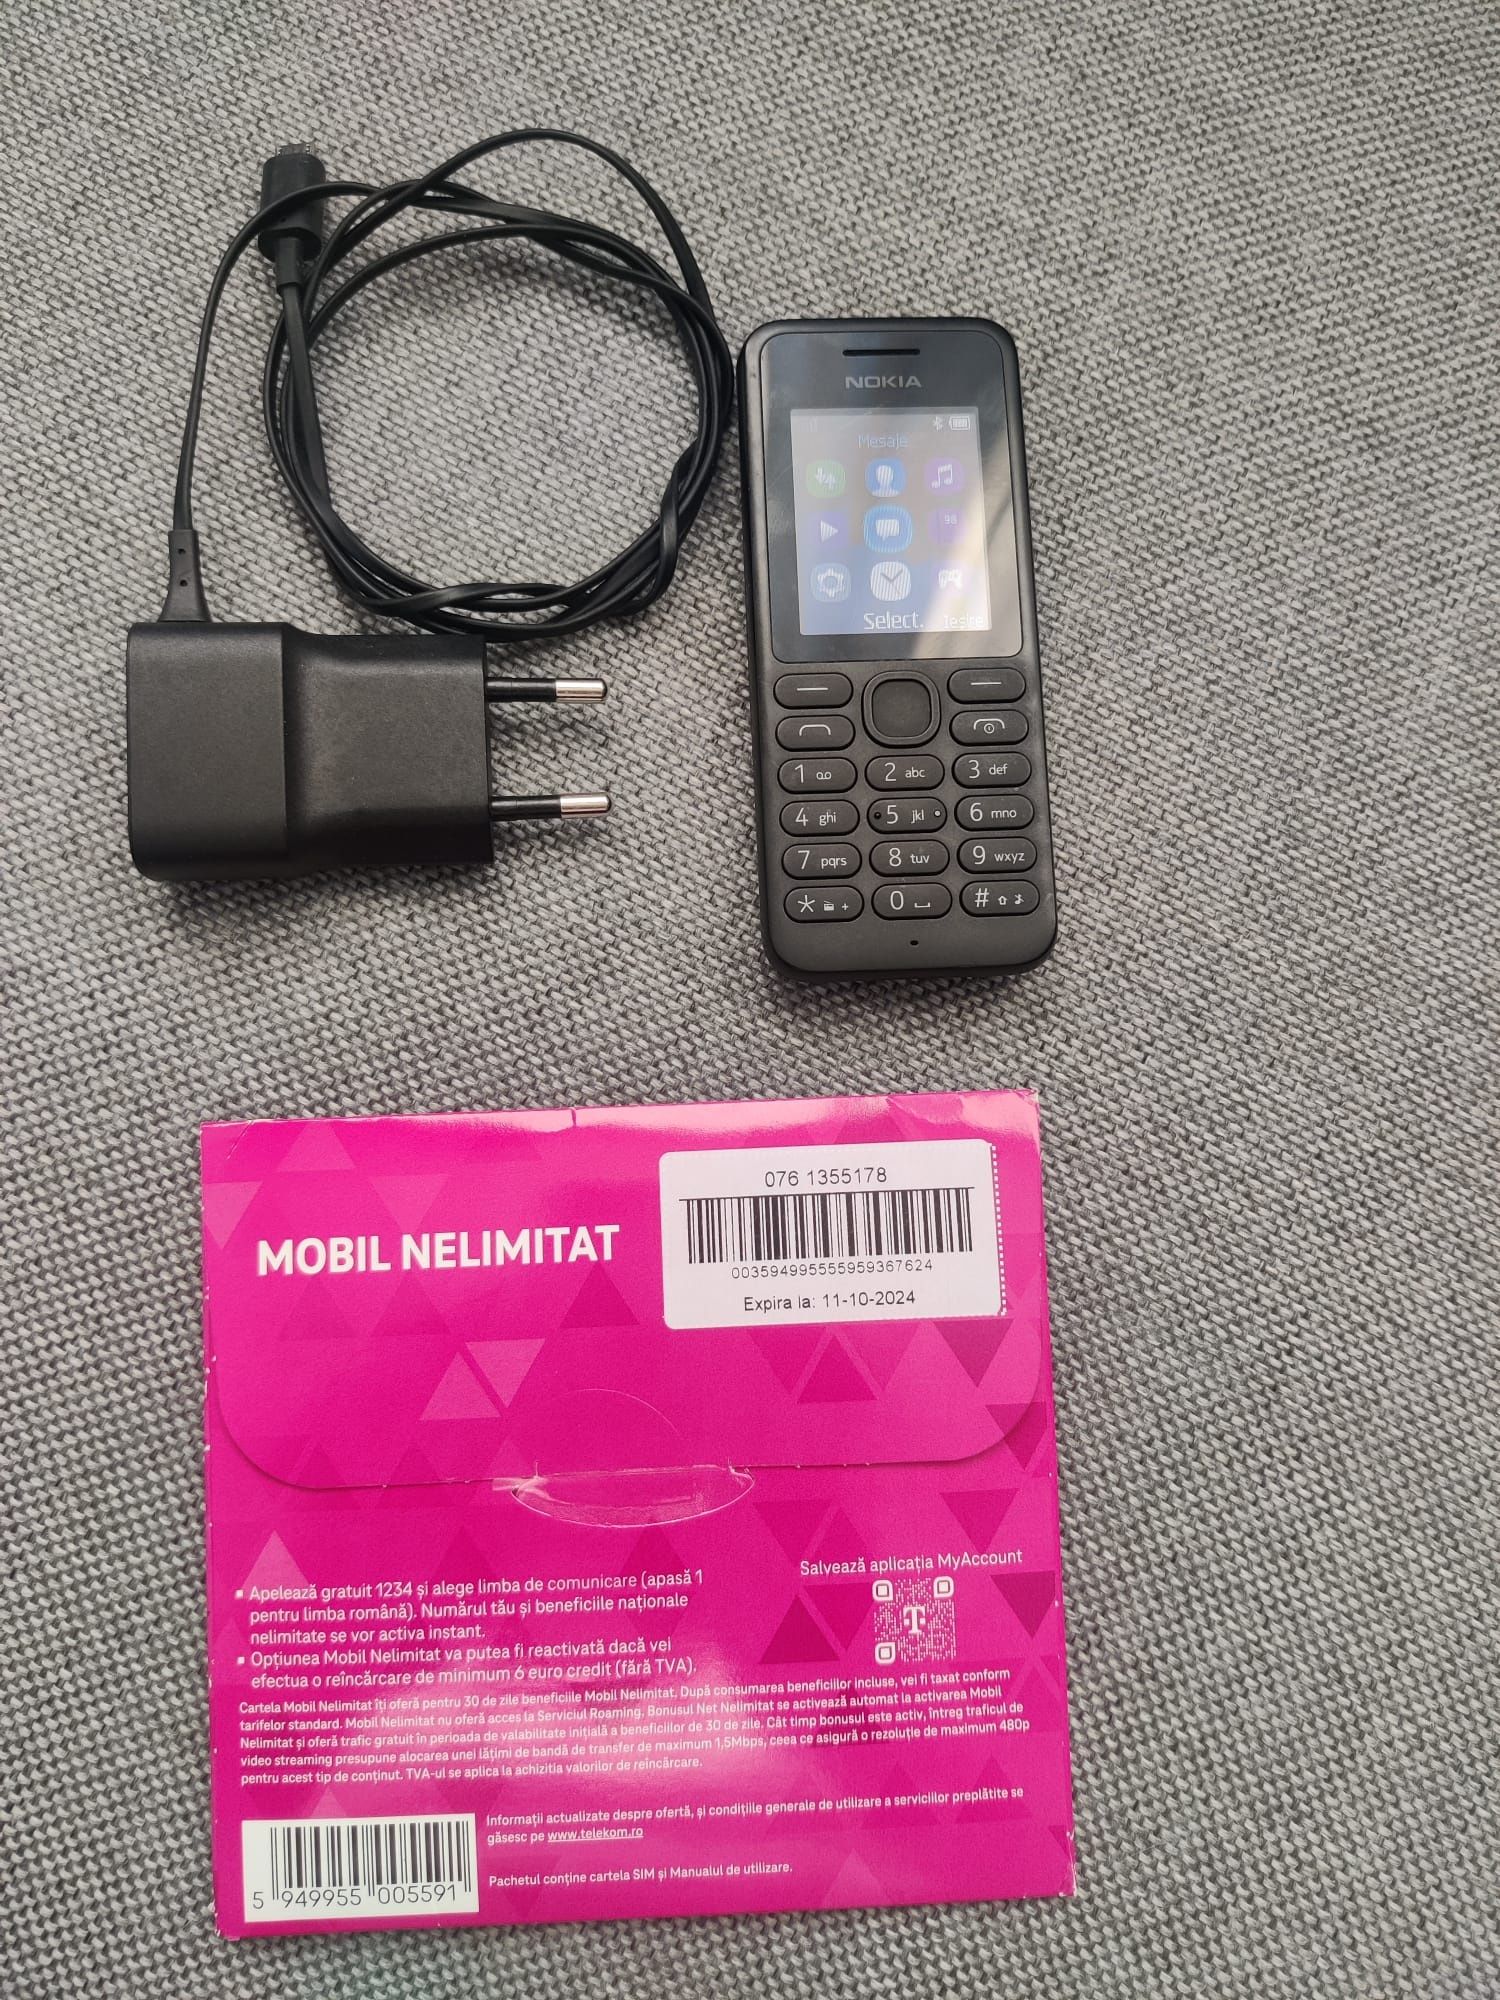 Nokia RM-1037 impecabil, sim cadou